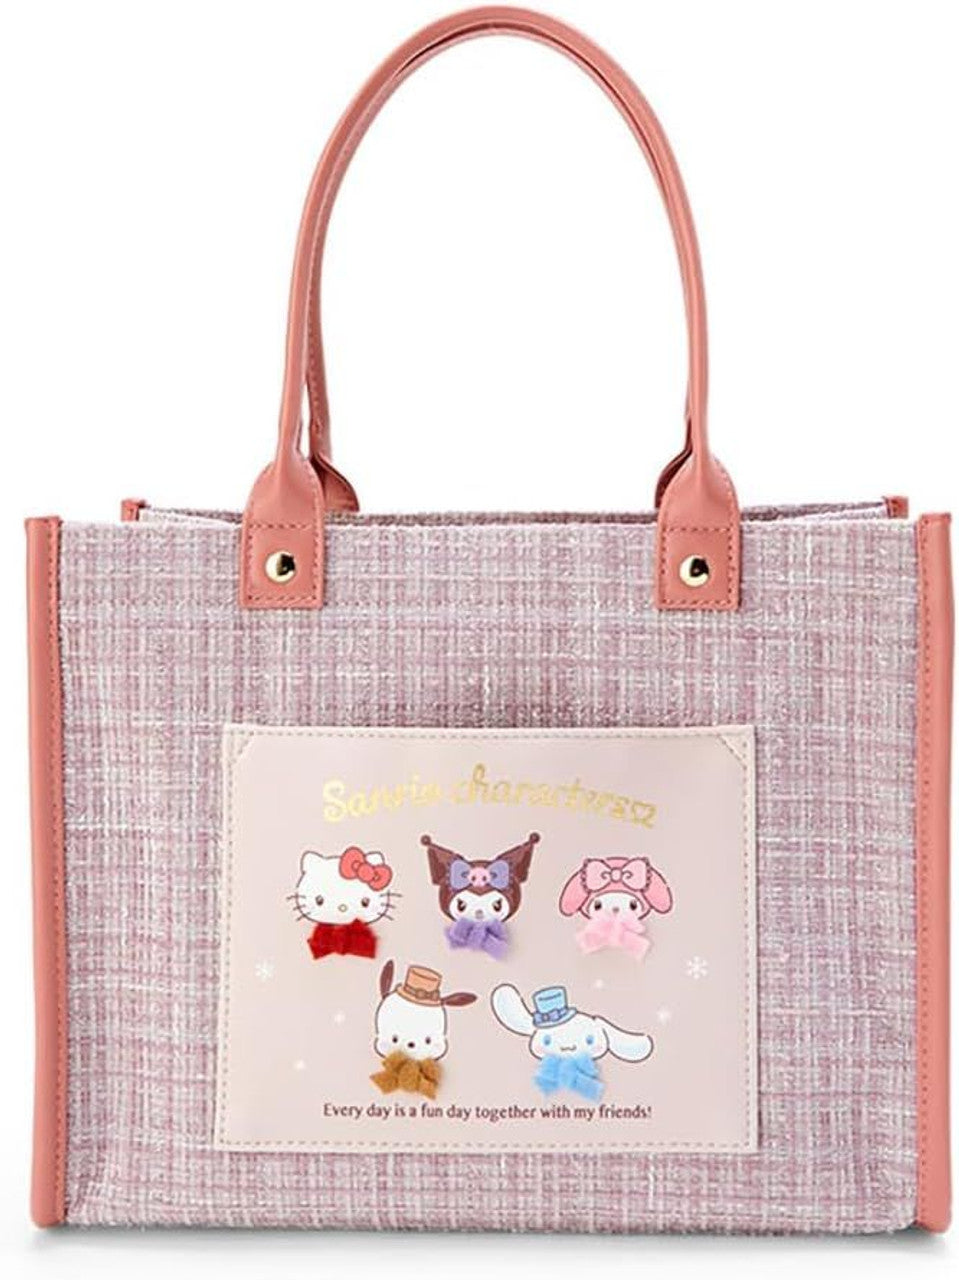 Handbag Characters - Sanrio Characters (Japan Limited Edition)